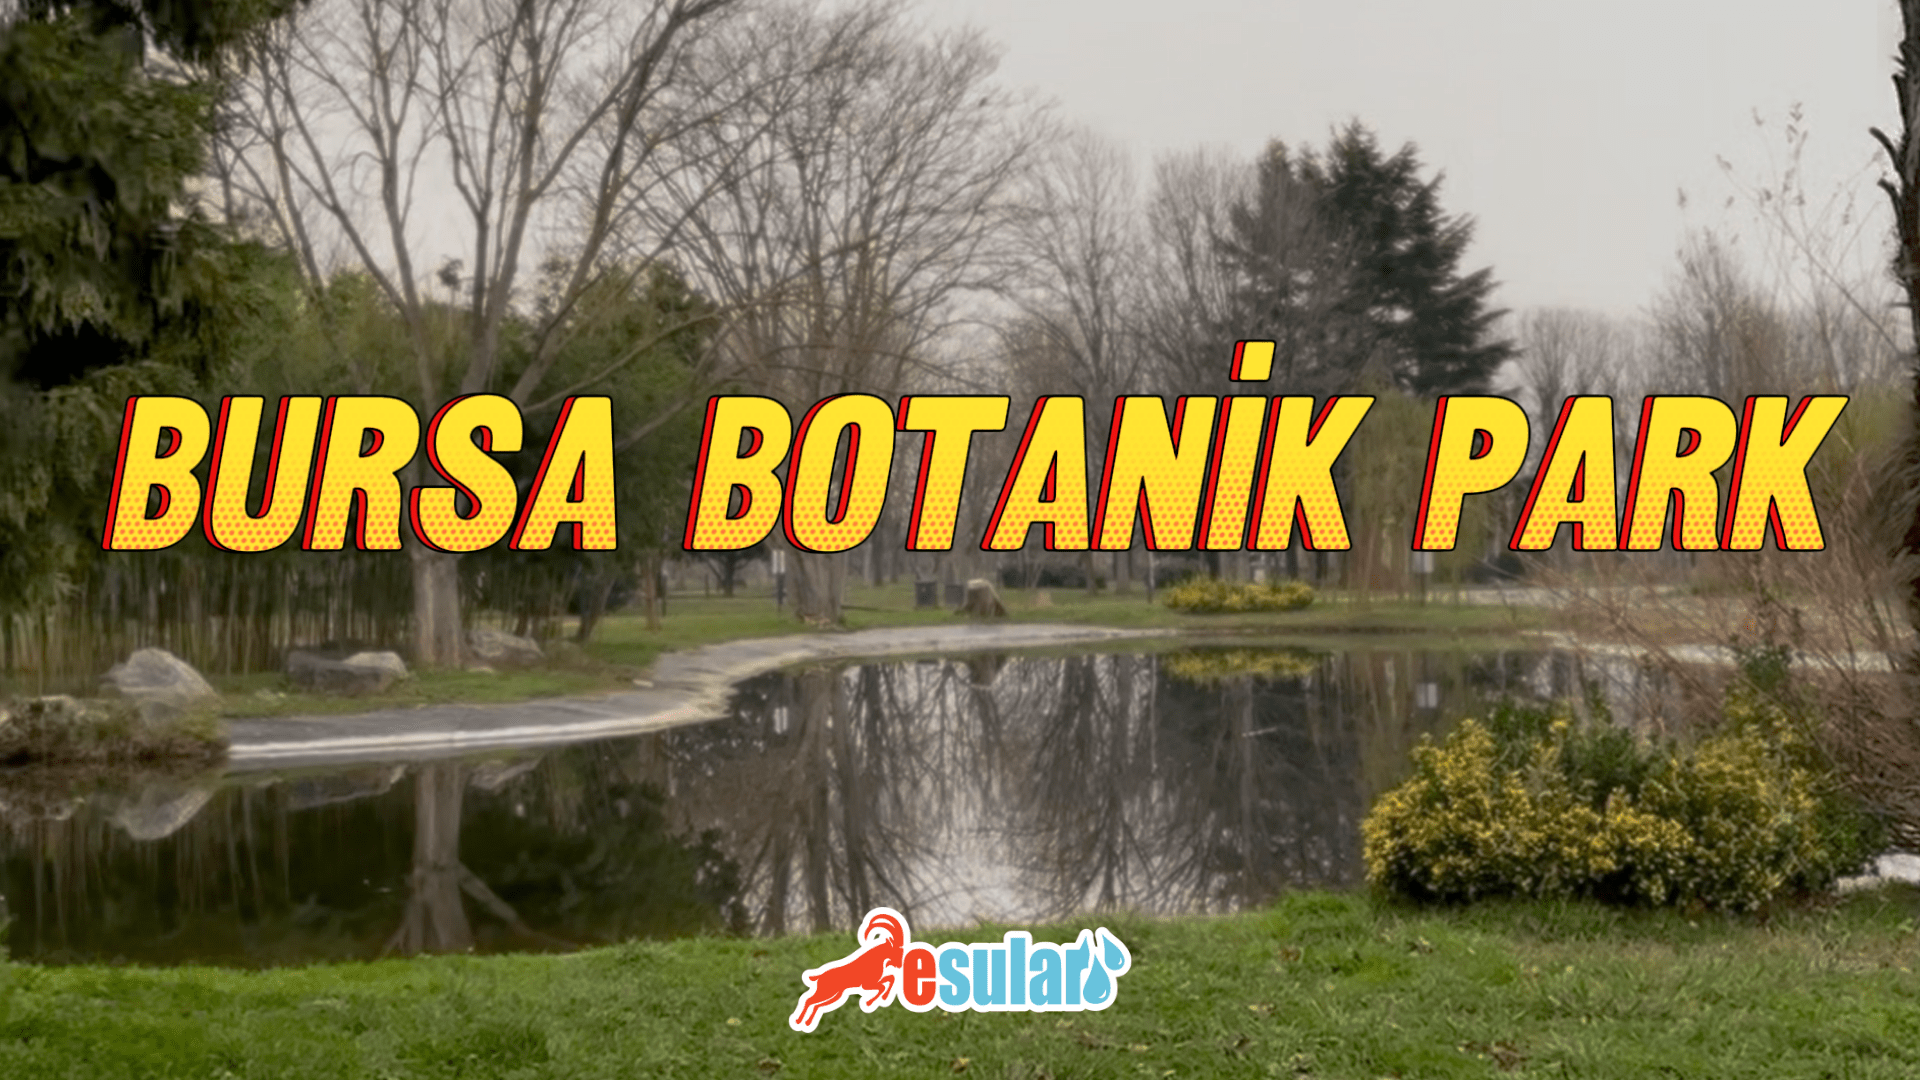 Bursa Botanik Park Akıllı Sulama Projesi